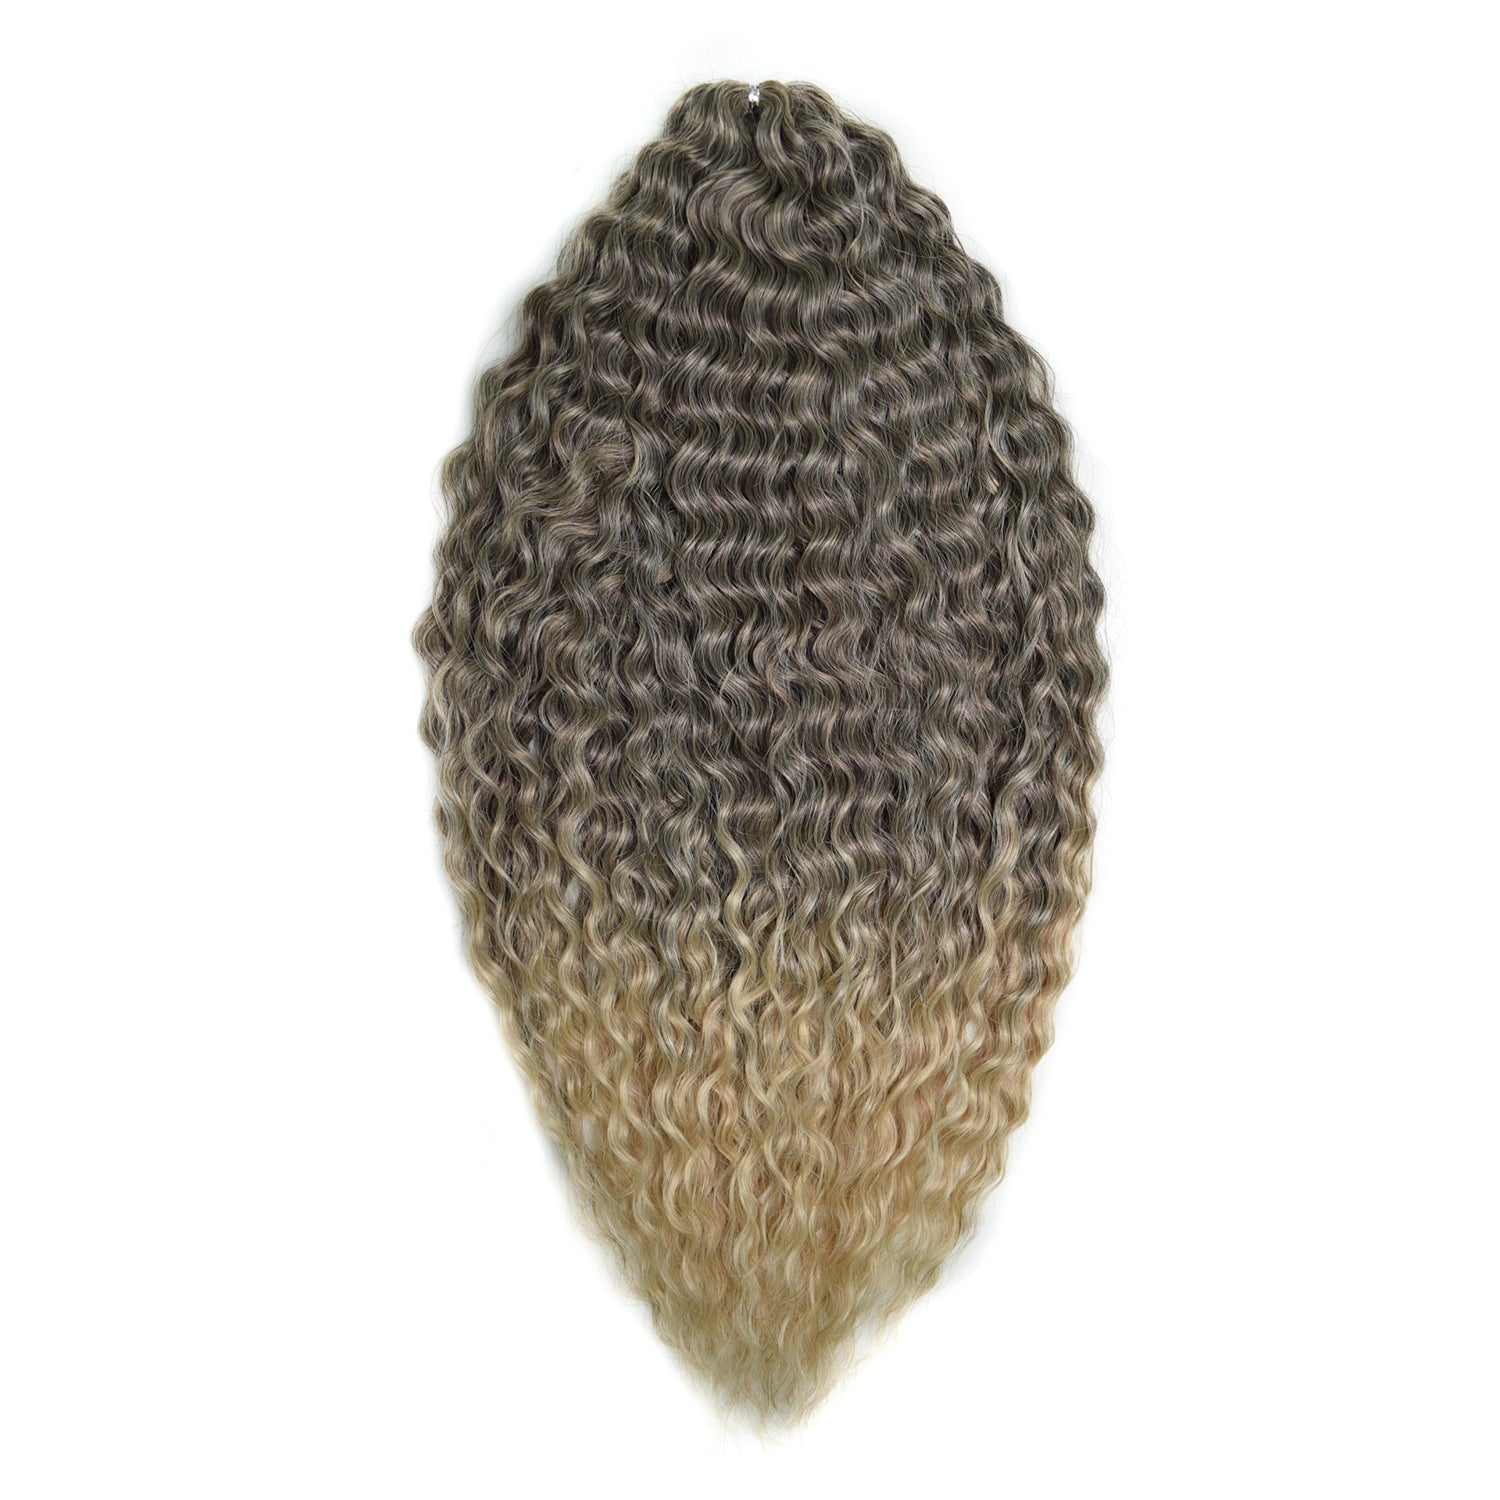 Афрокудри для плетения волос Ariel цвет T8 59 темно русый 55см вес 300г